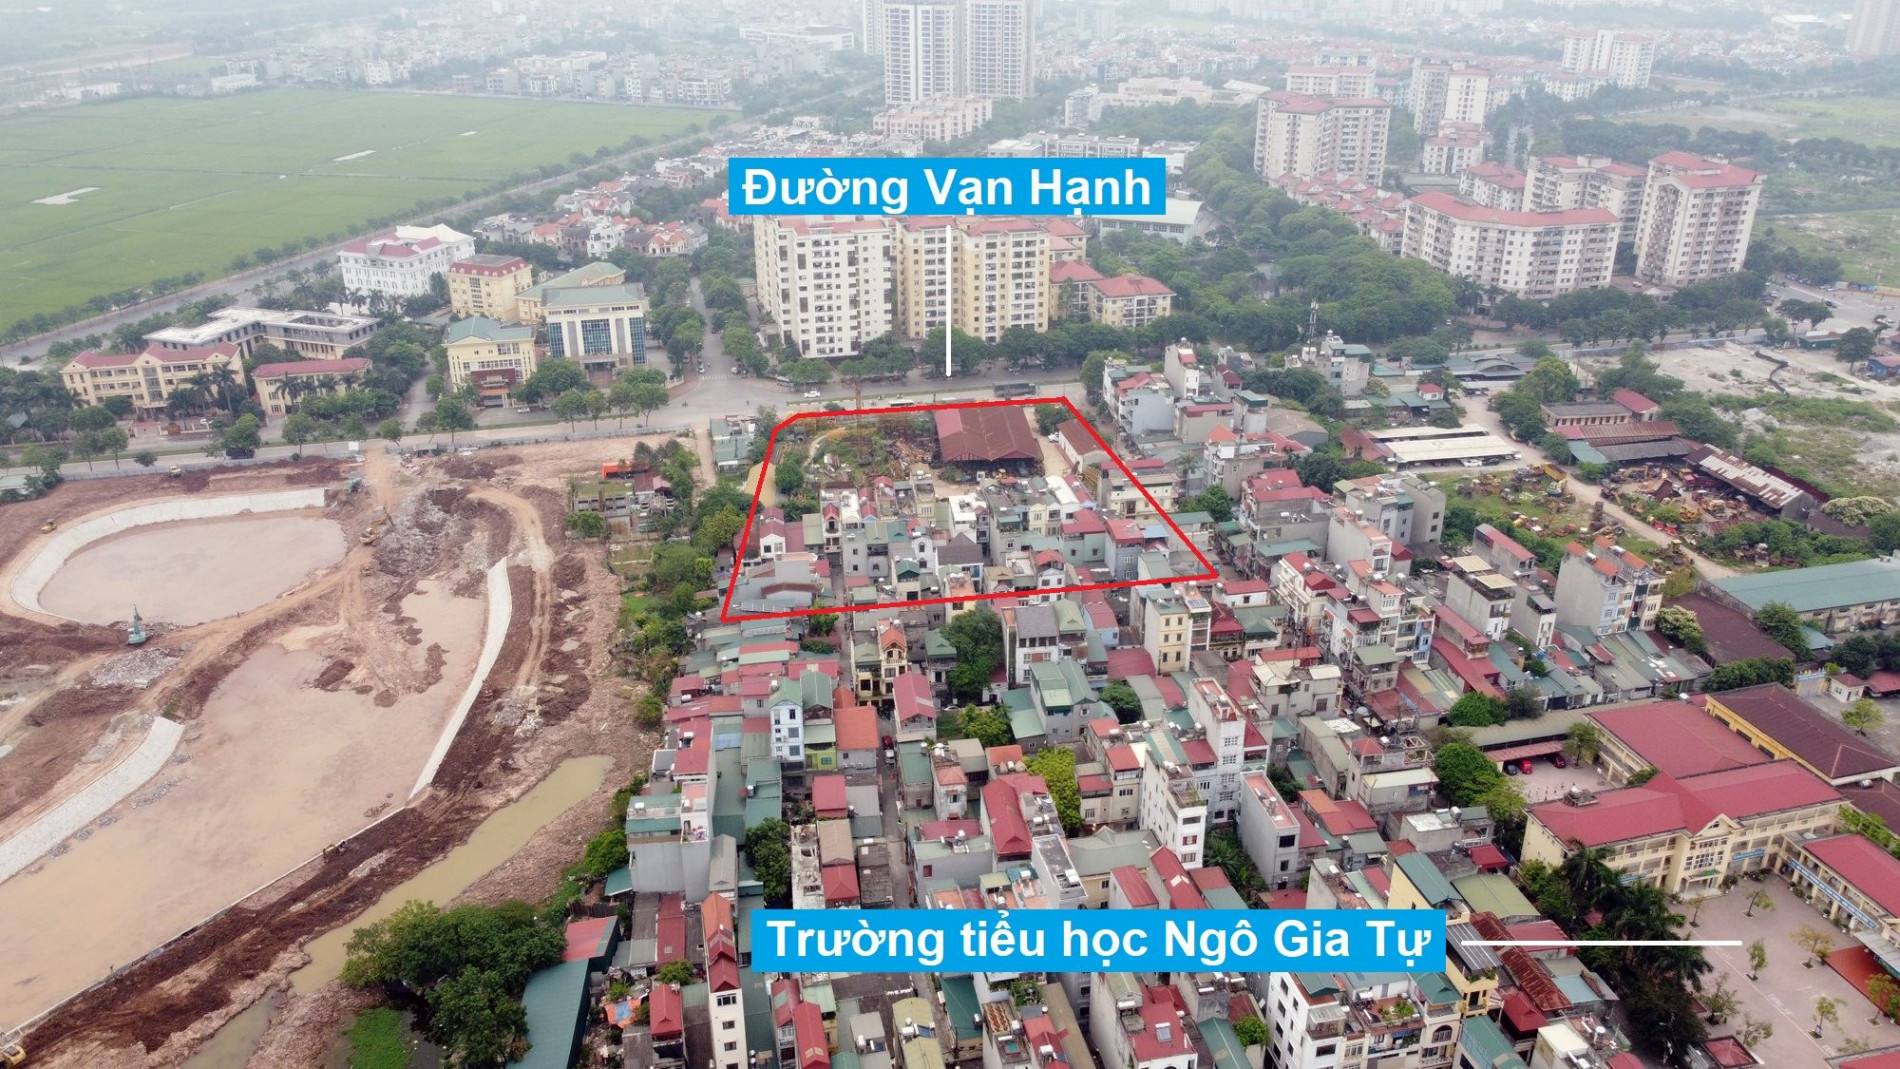 Những khu đất sắp thu hồi để xây trường học ở quận Long Biên, Hà Nội (phần 3)